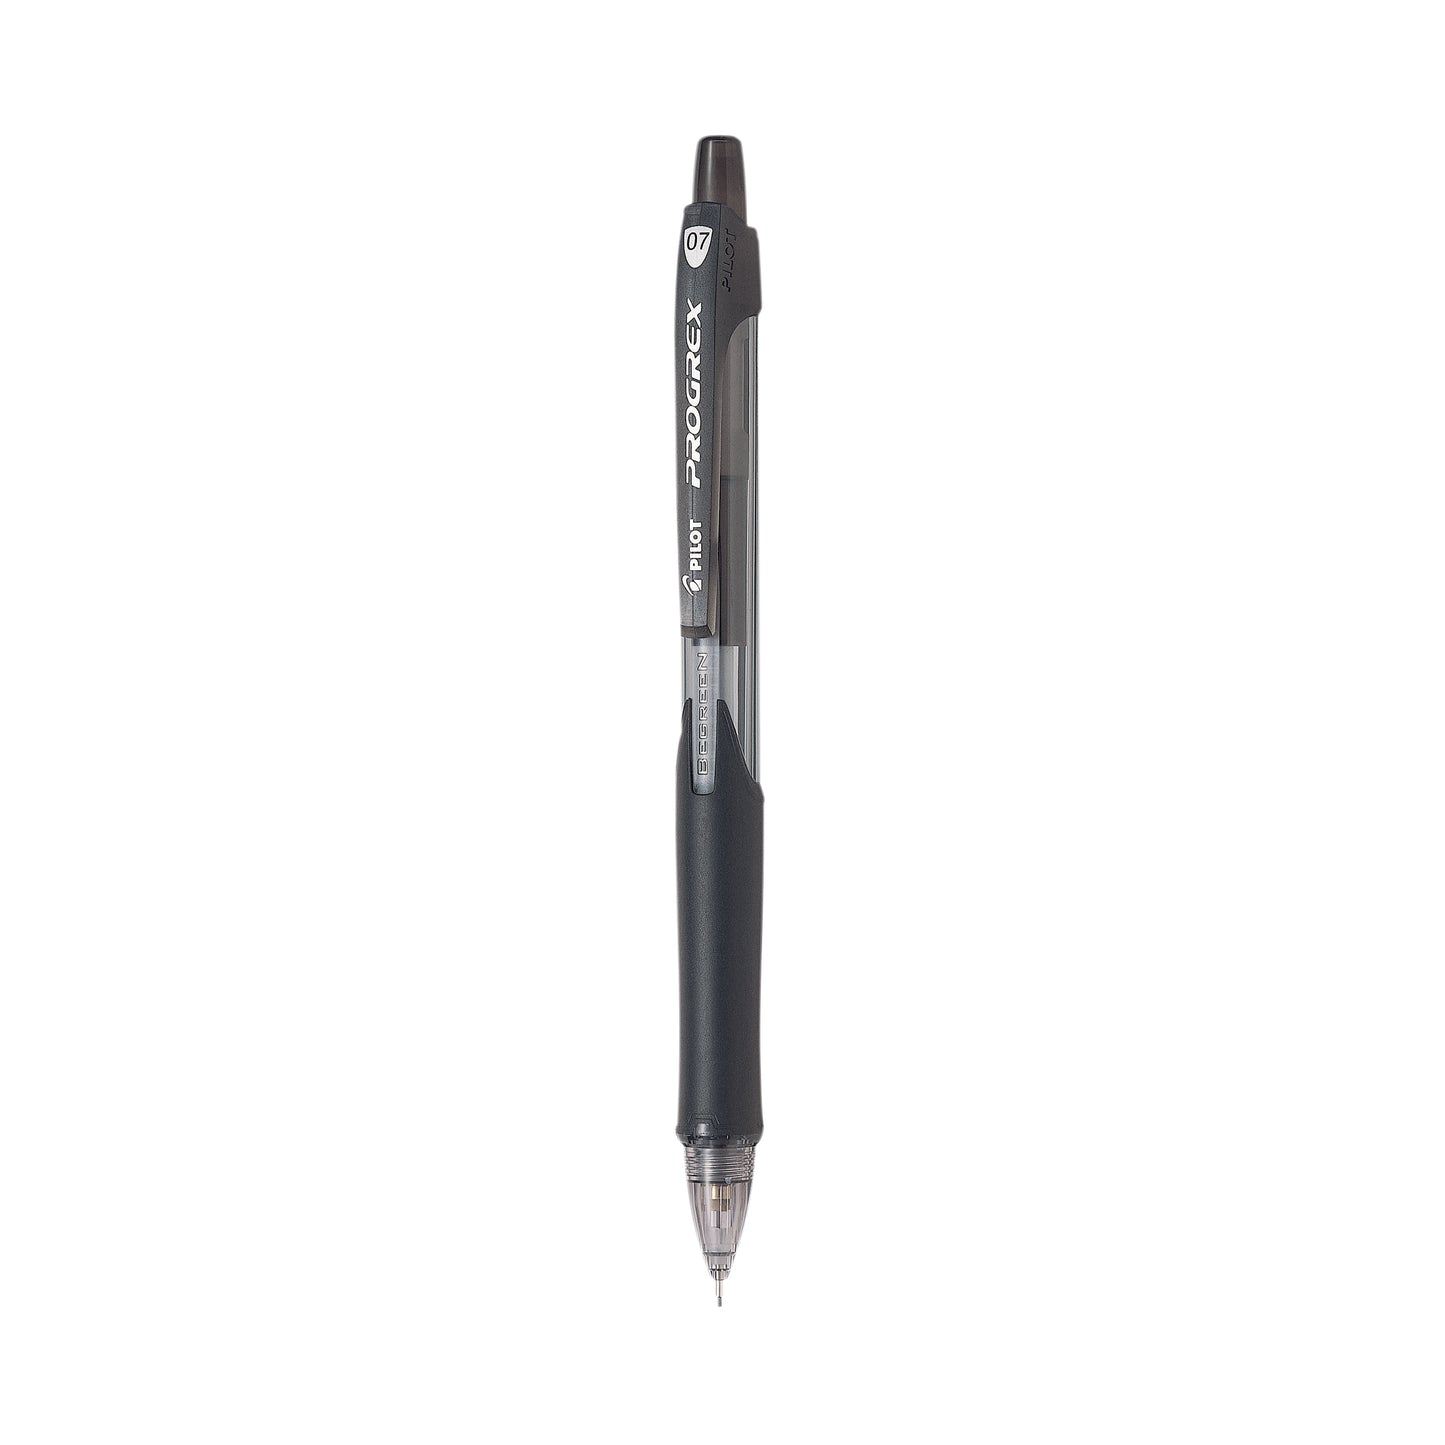 Pilot Begreen Progrex Mechanical Pencil 0.7mm Black HB Pack of 10